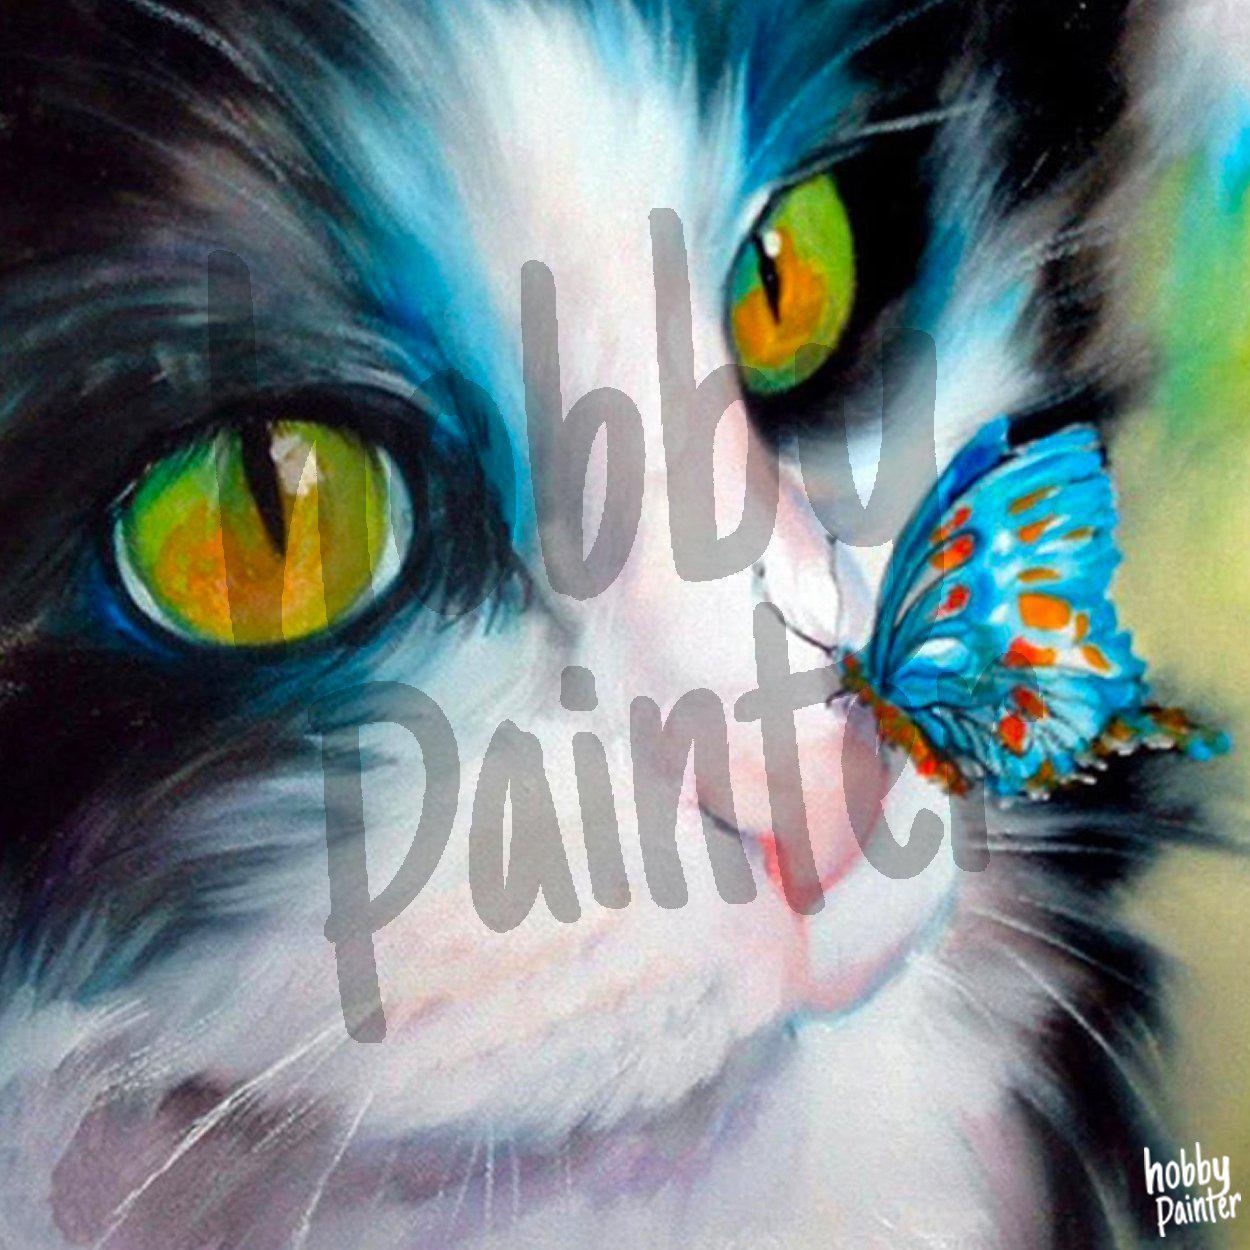 Diamond Painting Poes met vlinder voorbeeld Hobby Painter